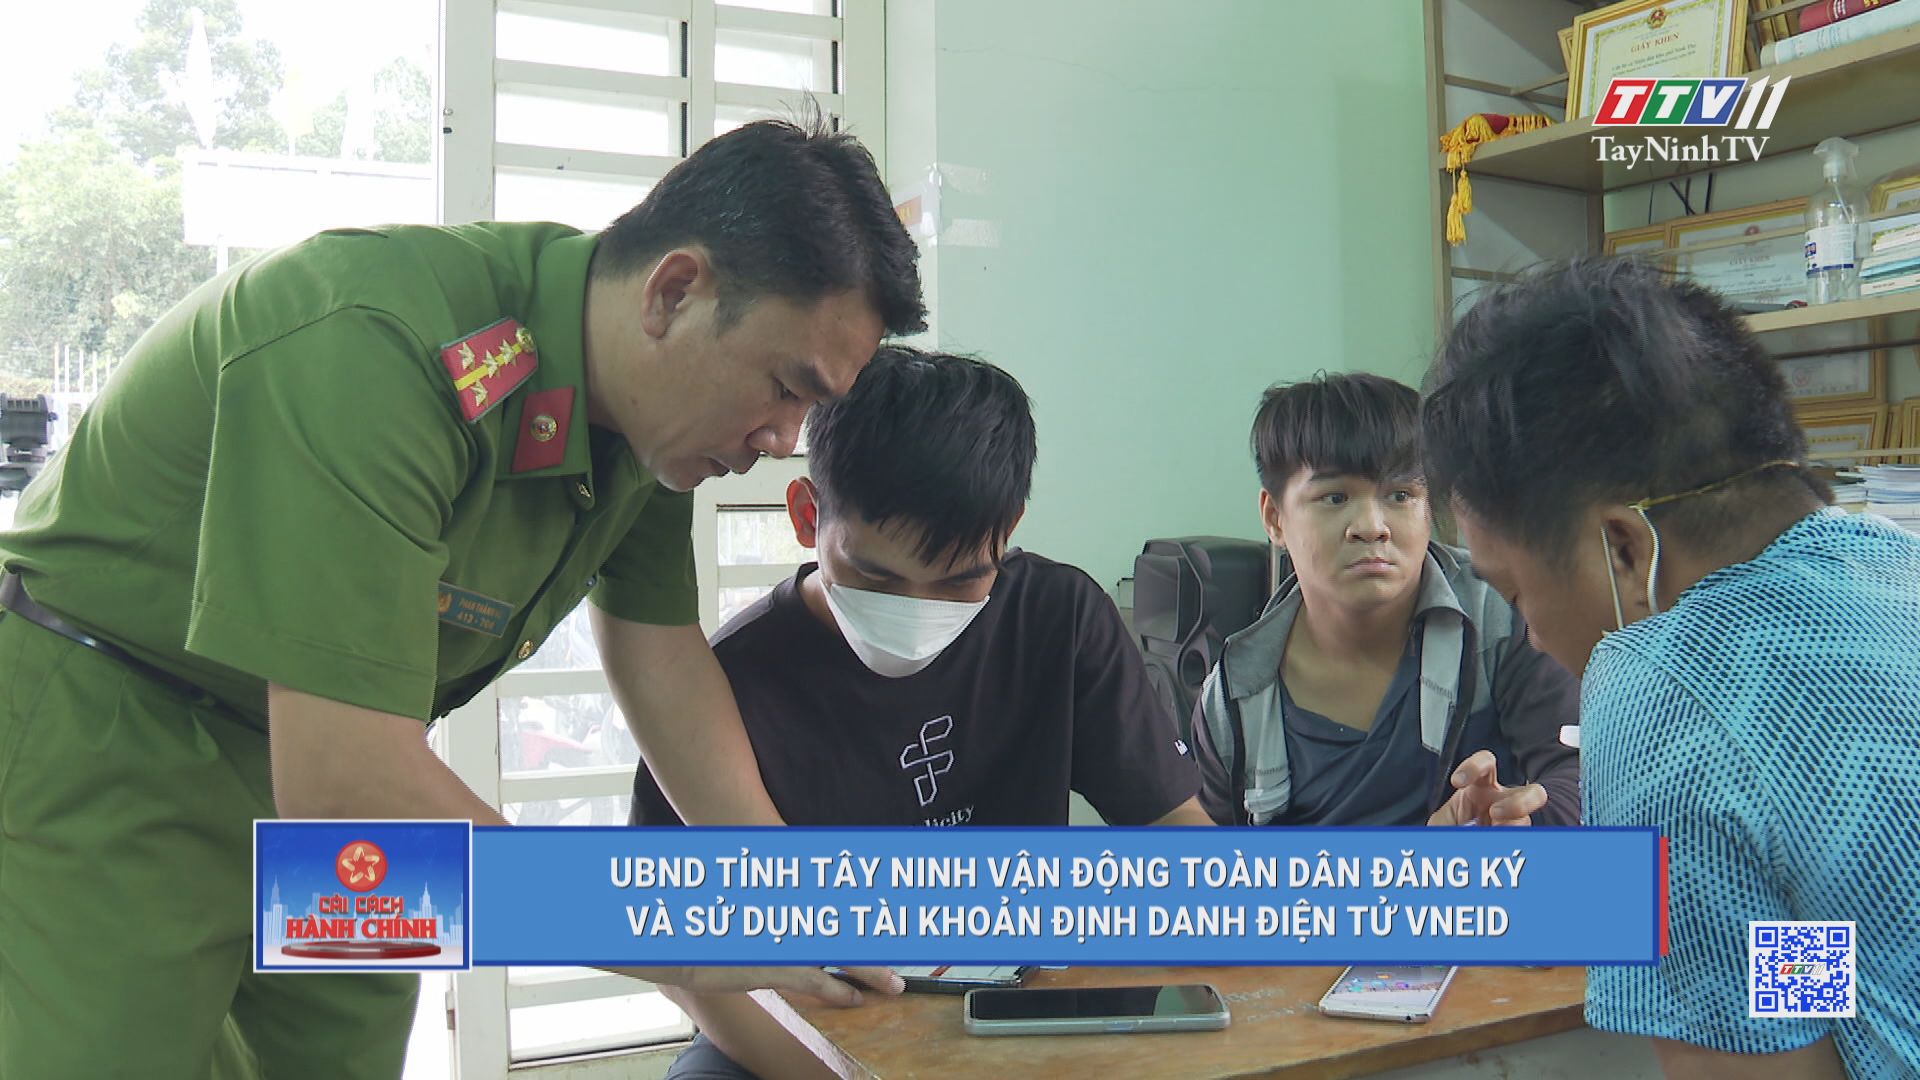 Nâng cao hiệu quả công tác cải cách hành chính | TayNinhTV